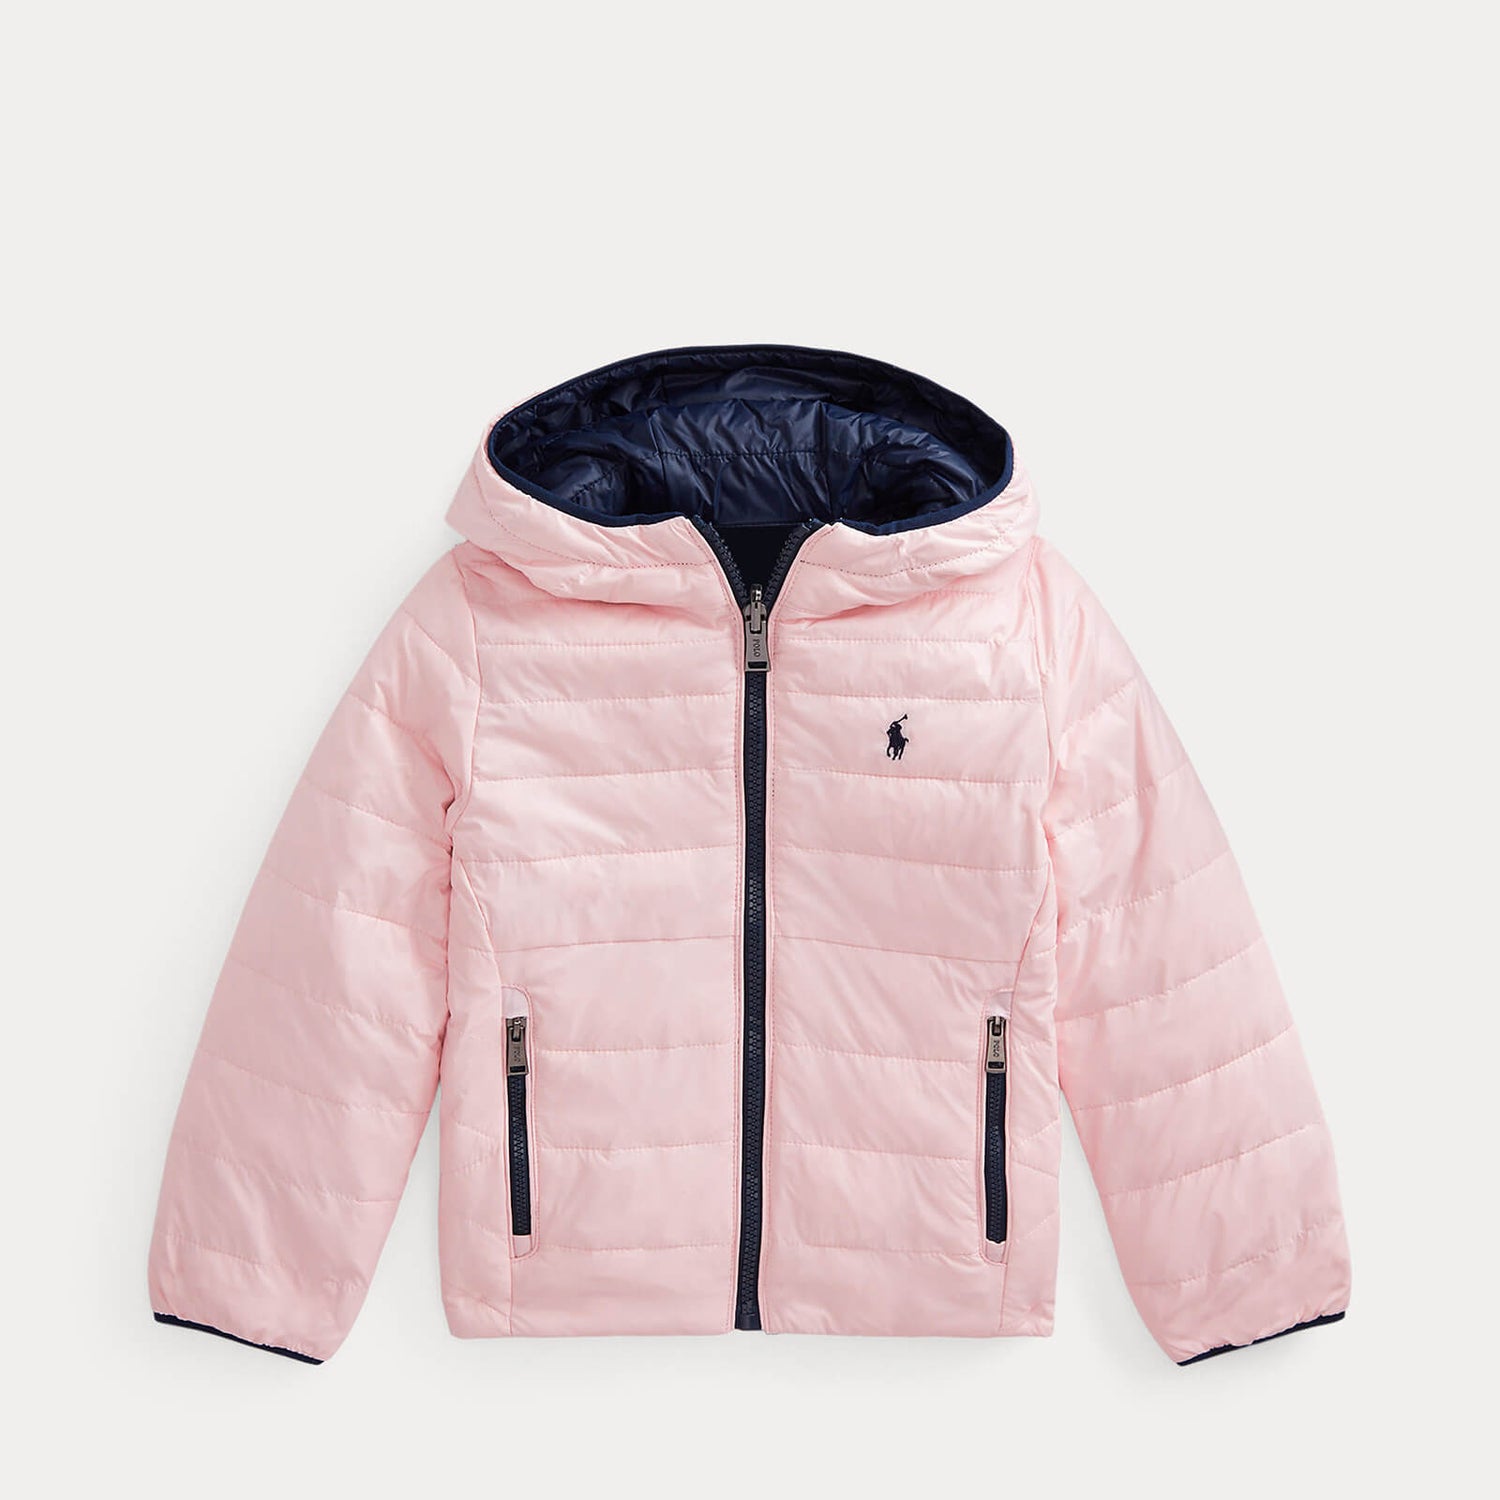 Polo Ralph Lauren Girls' Reversible Bomber Jacket - Hint of Pink/Newport Navy - 4 Years